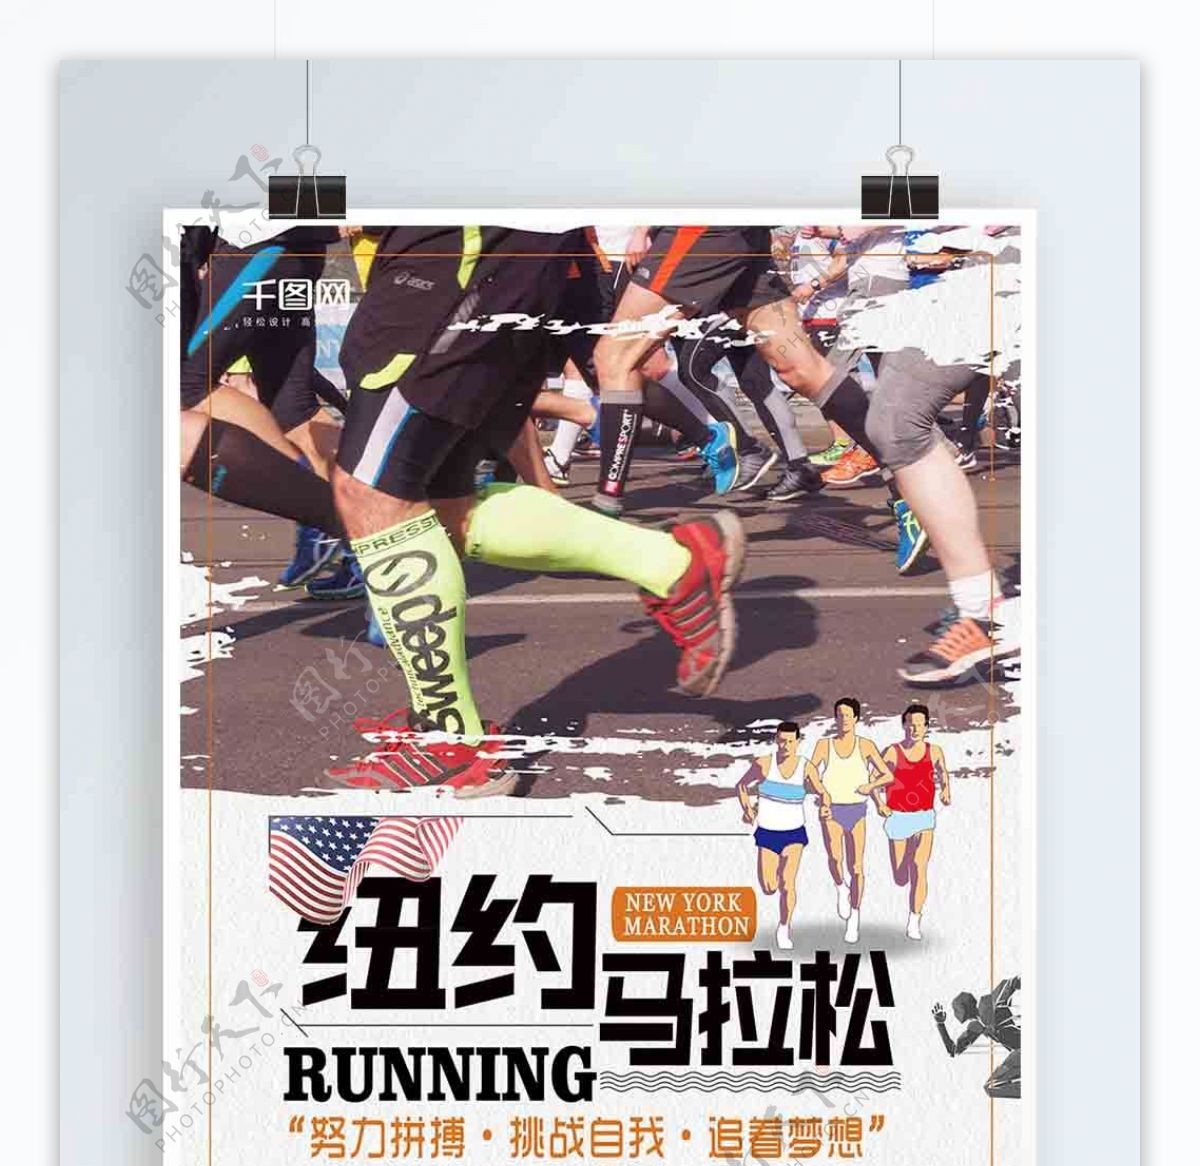 创意纽约马拉松比赛宣传海报设计